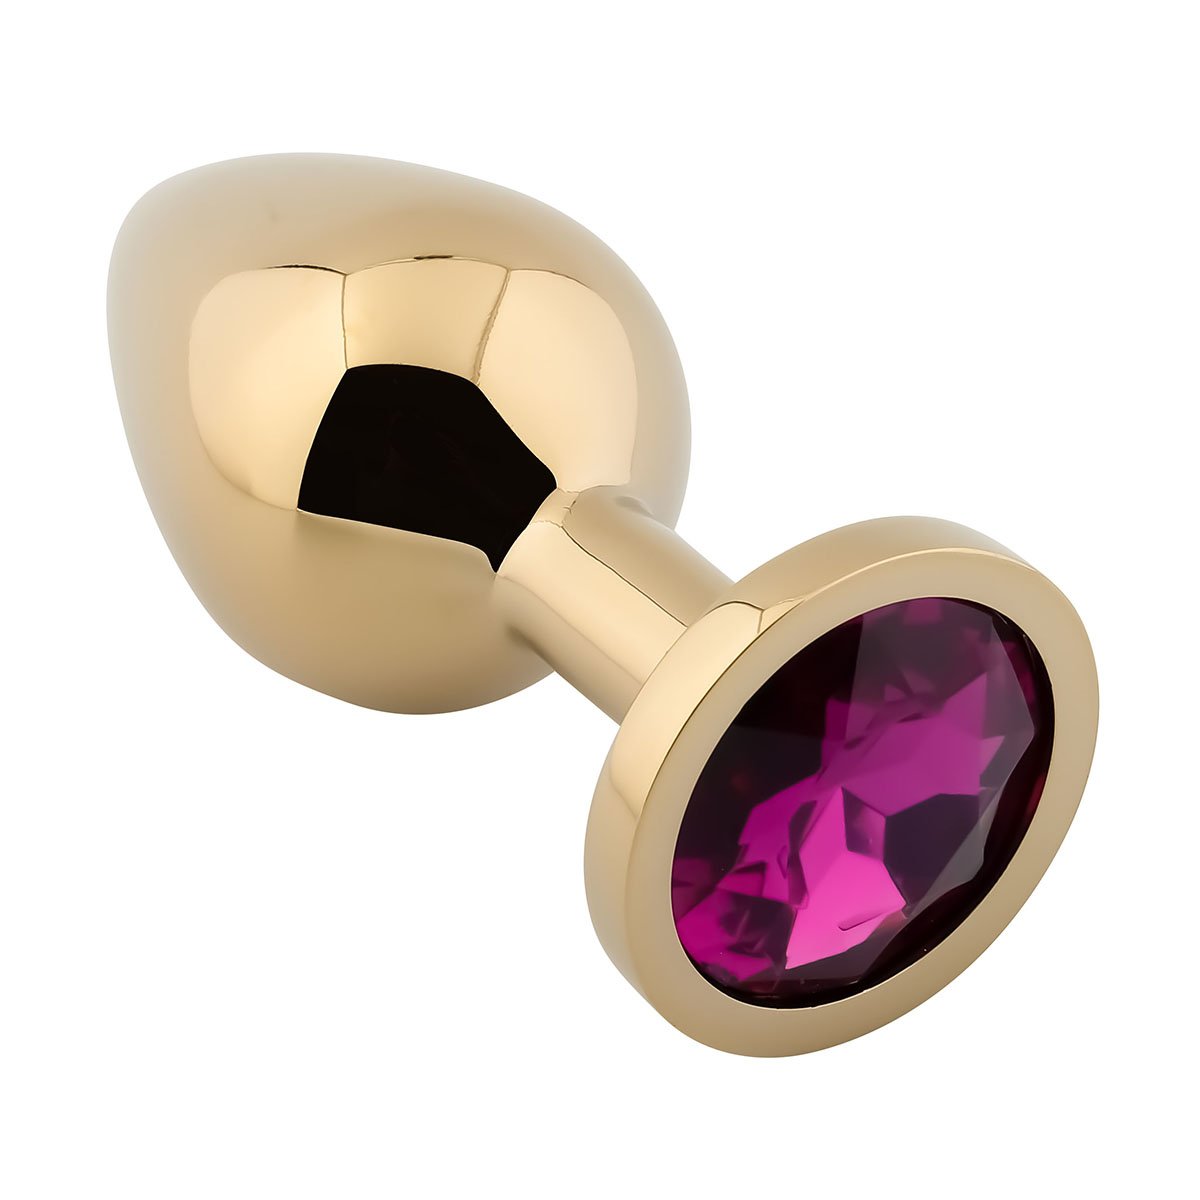 Foto van Banoch - Buttplug Aurora purple gold Medium - gouden Metalen buttplug - Diamant steen - paars